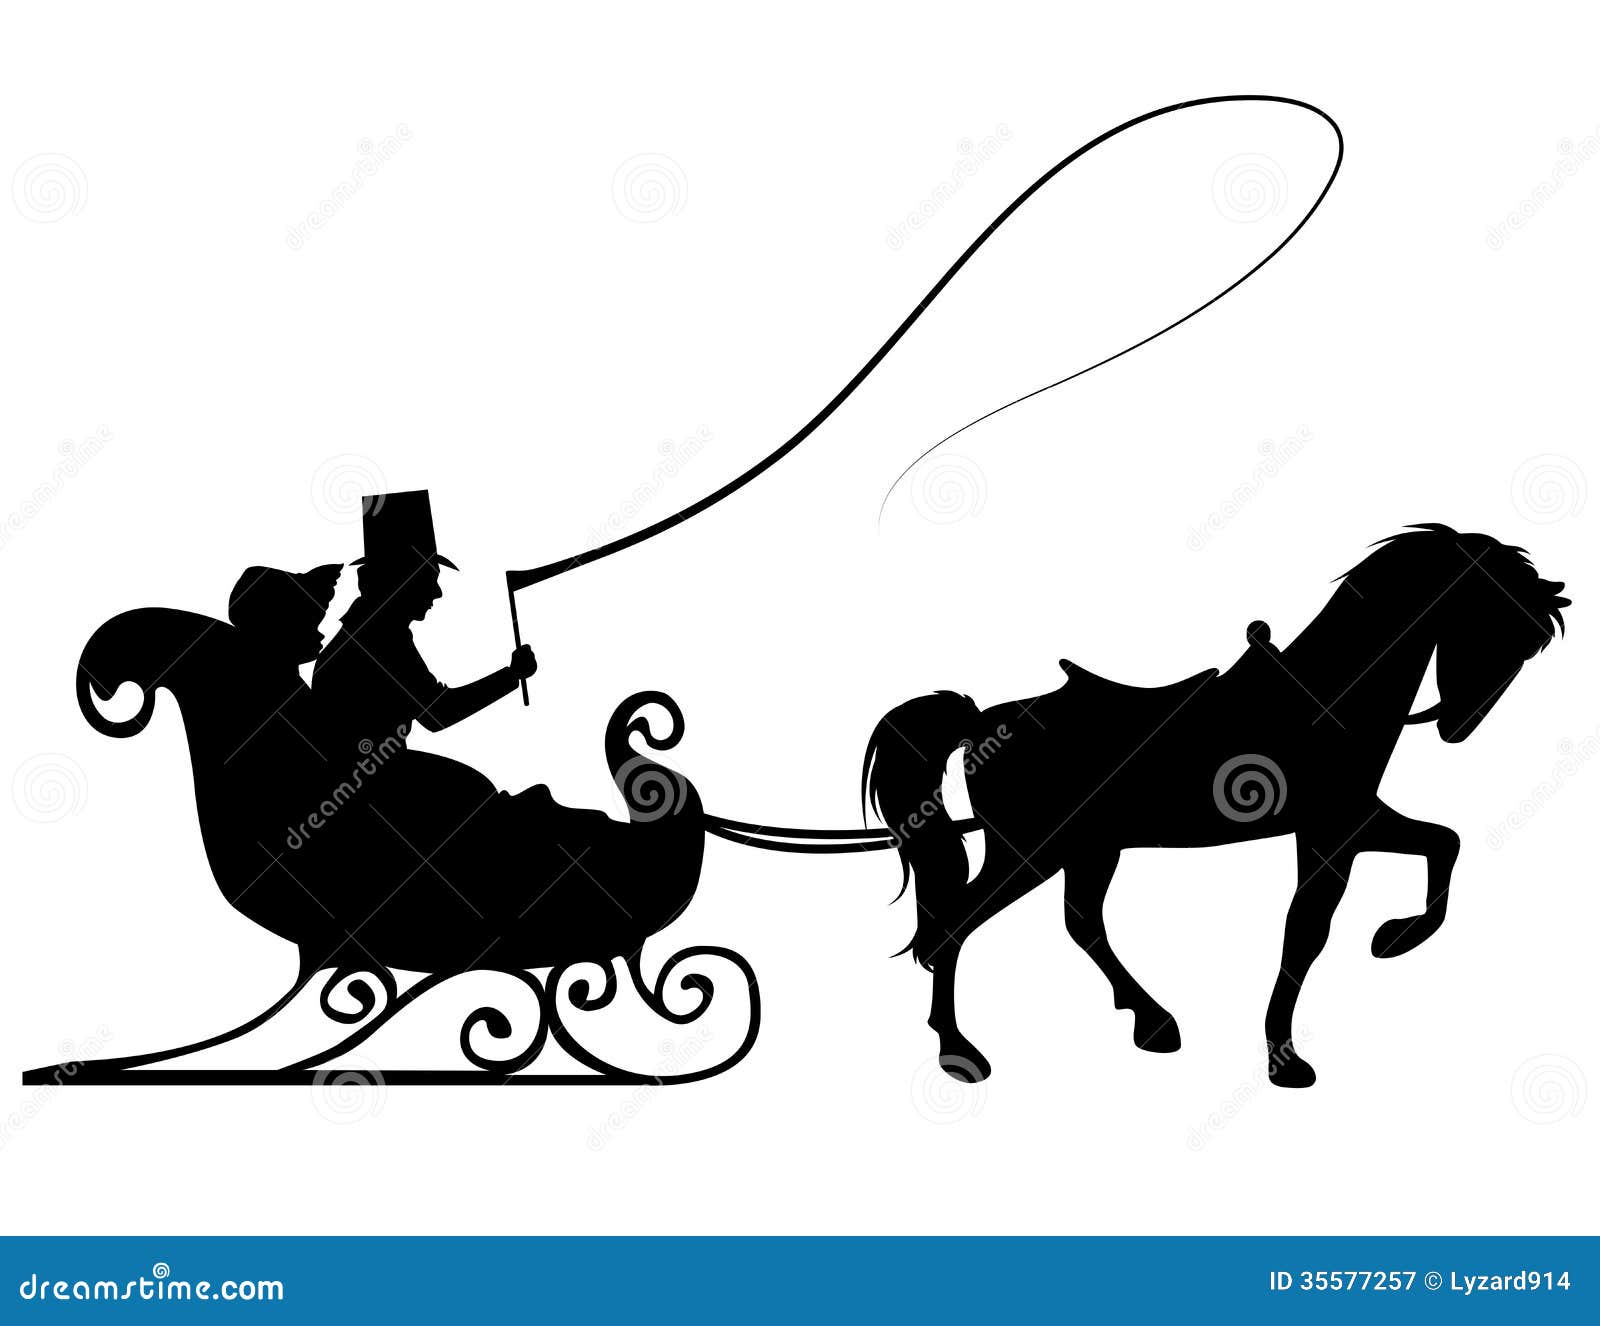 sleigh ride